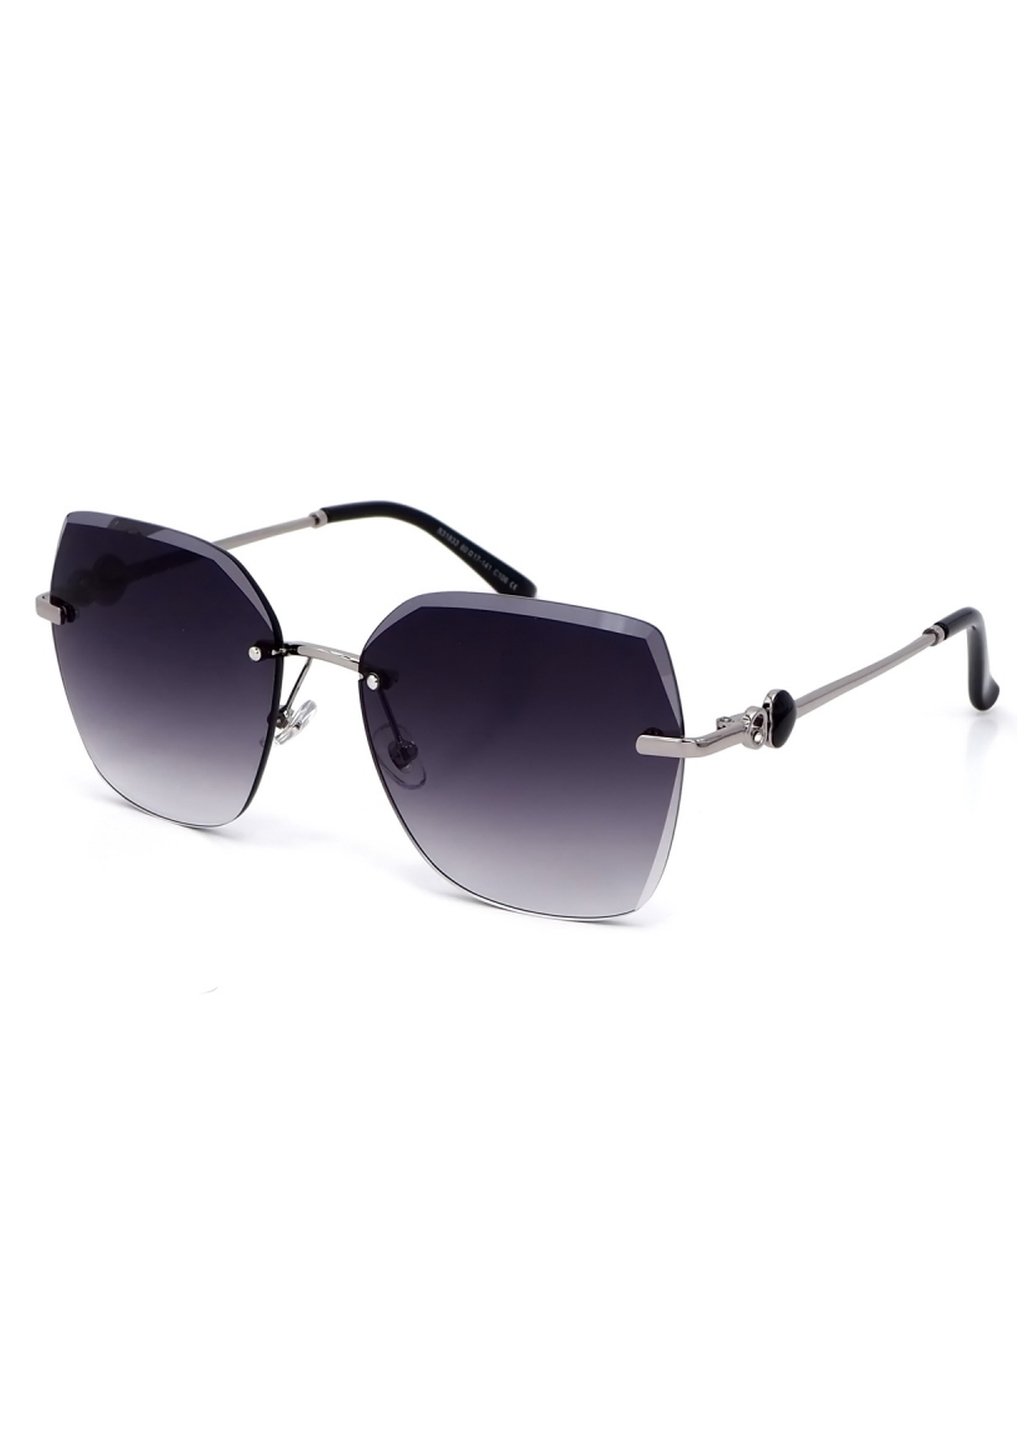 Купить Женские солнцезащитные очки Merlini с поляризацией S31833 117093 - Серый в интернет-магазине